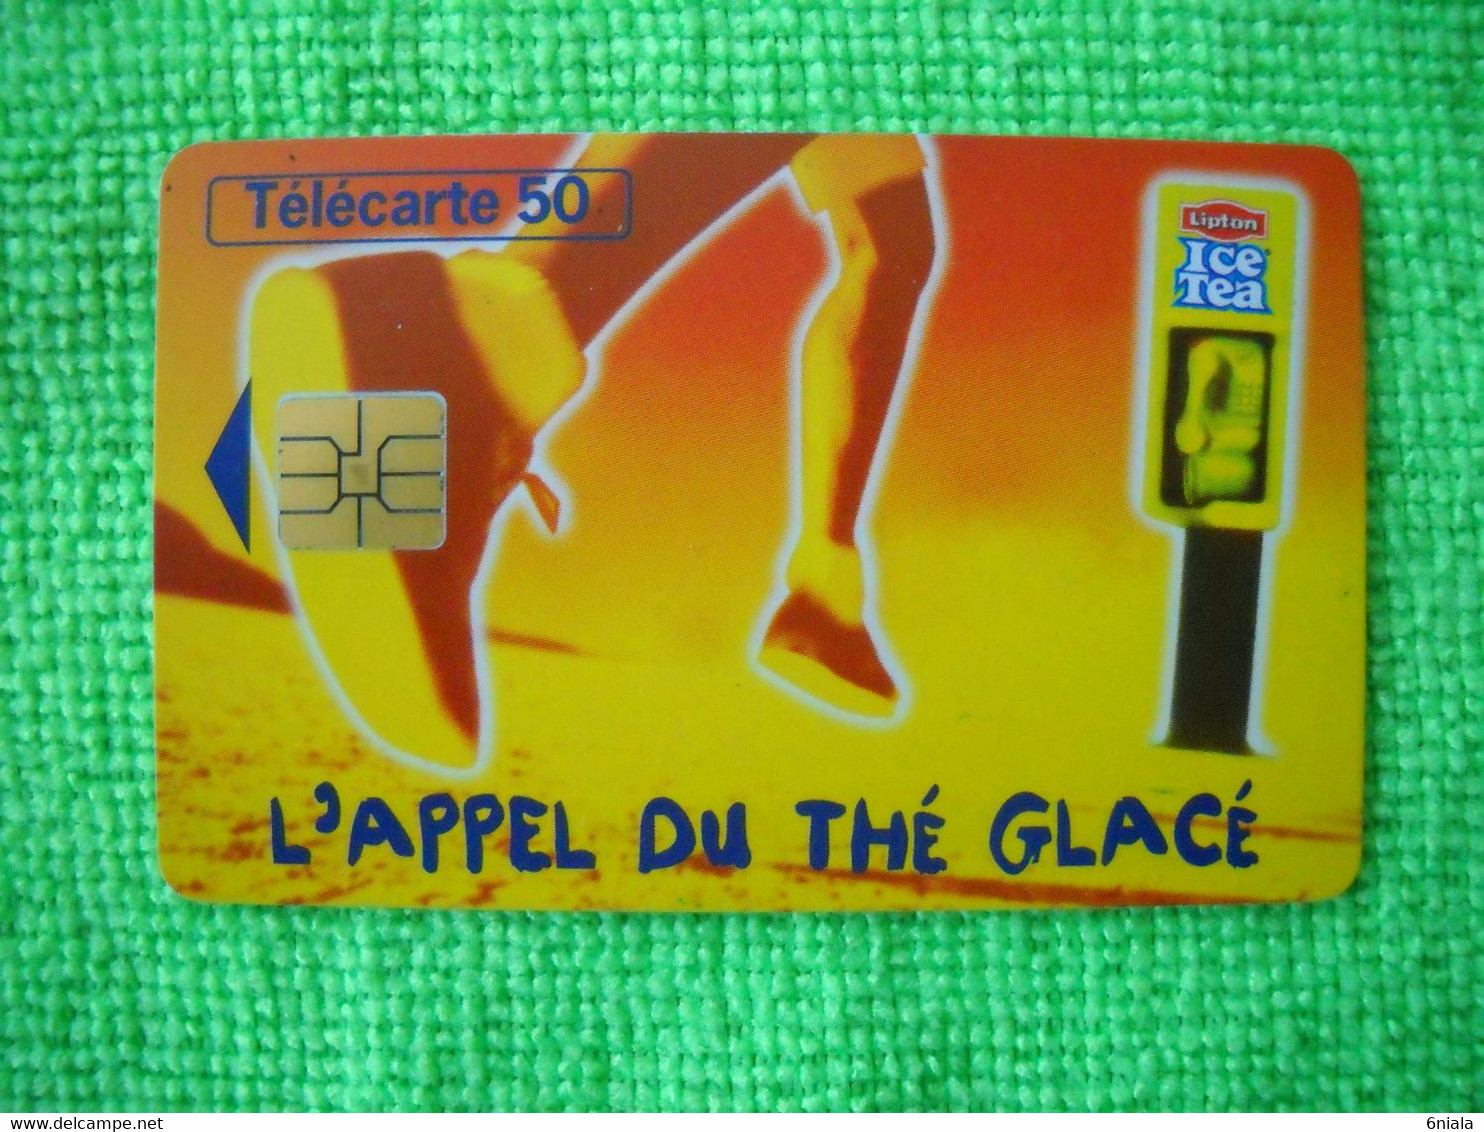 7083 Télécarte Collection ICE TEA L'appel Du Thé Glacé   (Boisson) 50u  ( Recto Verso)  Carte Téléphonique - Lebensmittel